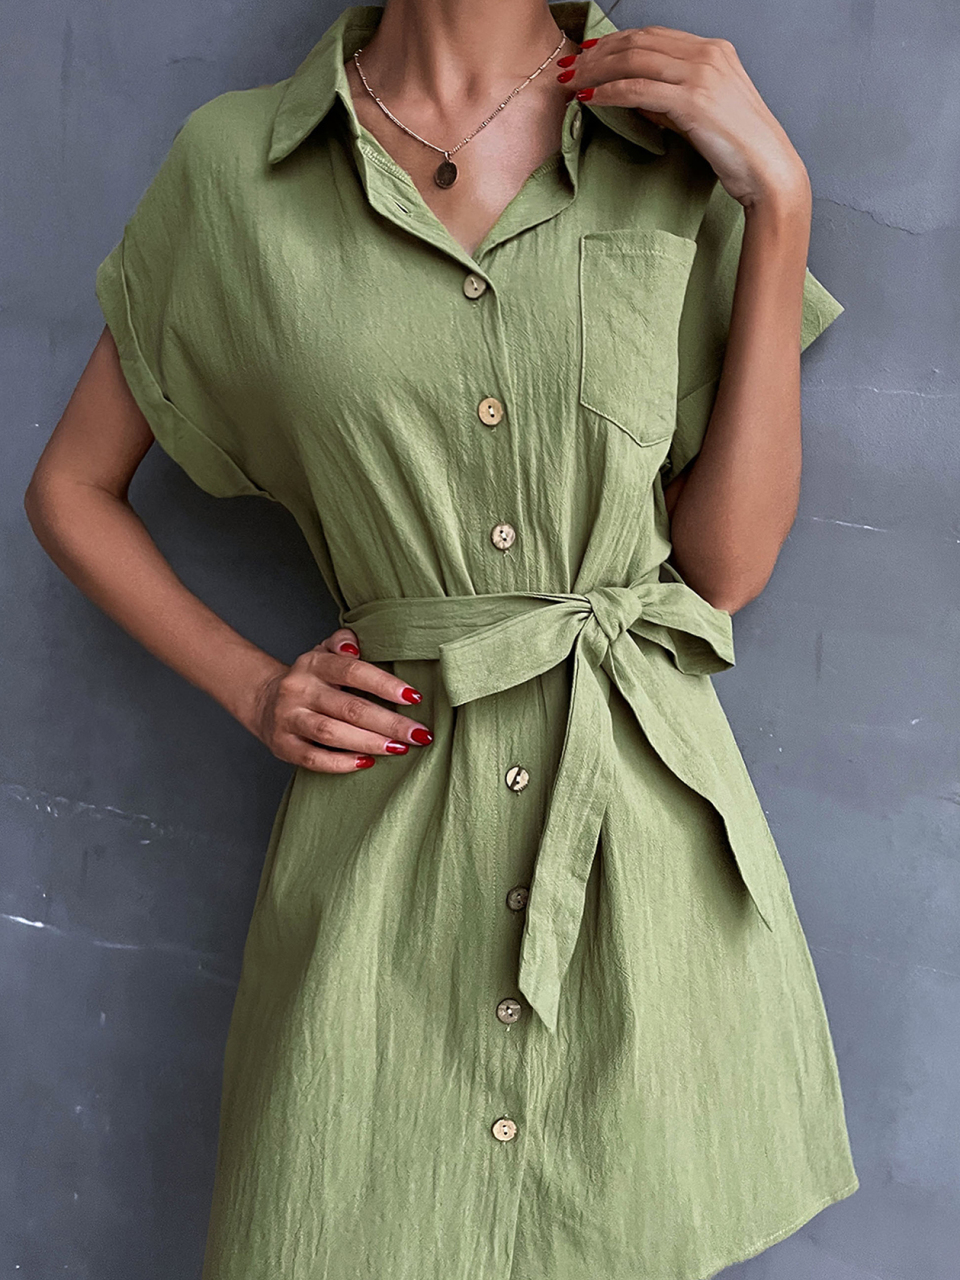 Women's Shirt Dress Green Lace Up Short Sleeve Cotton Linen Dress